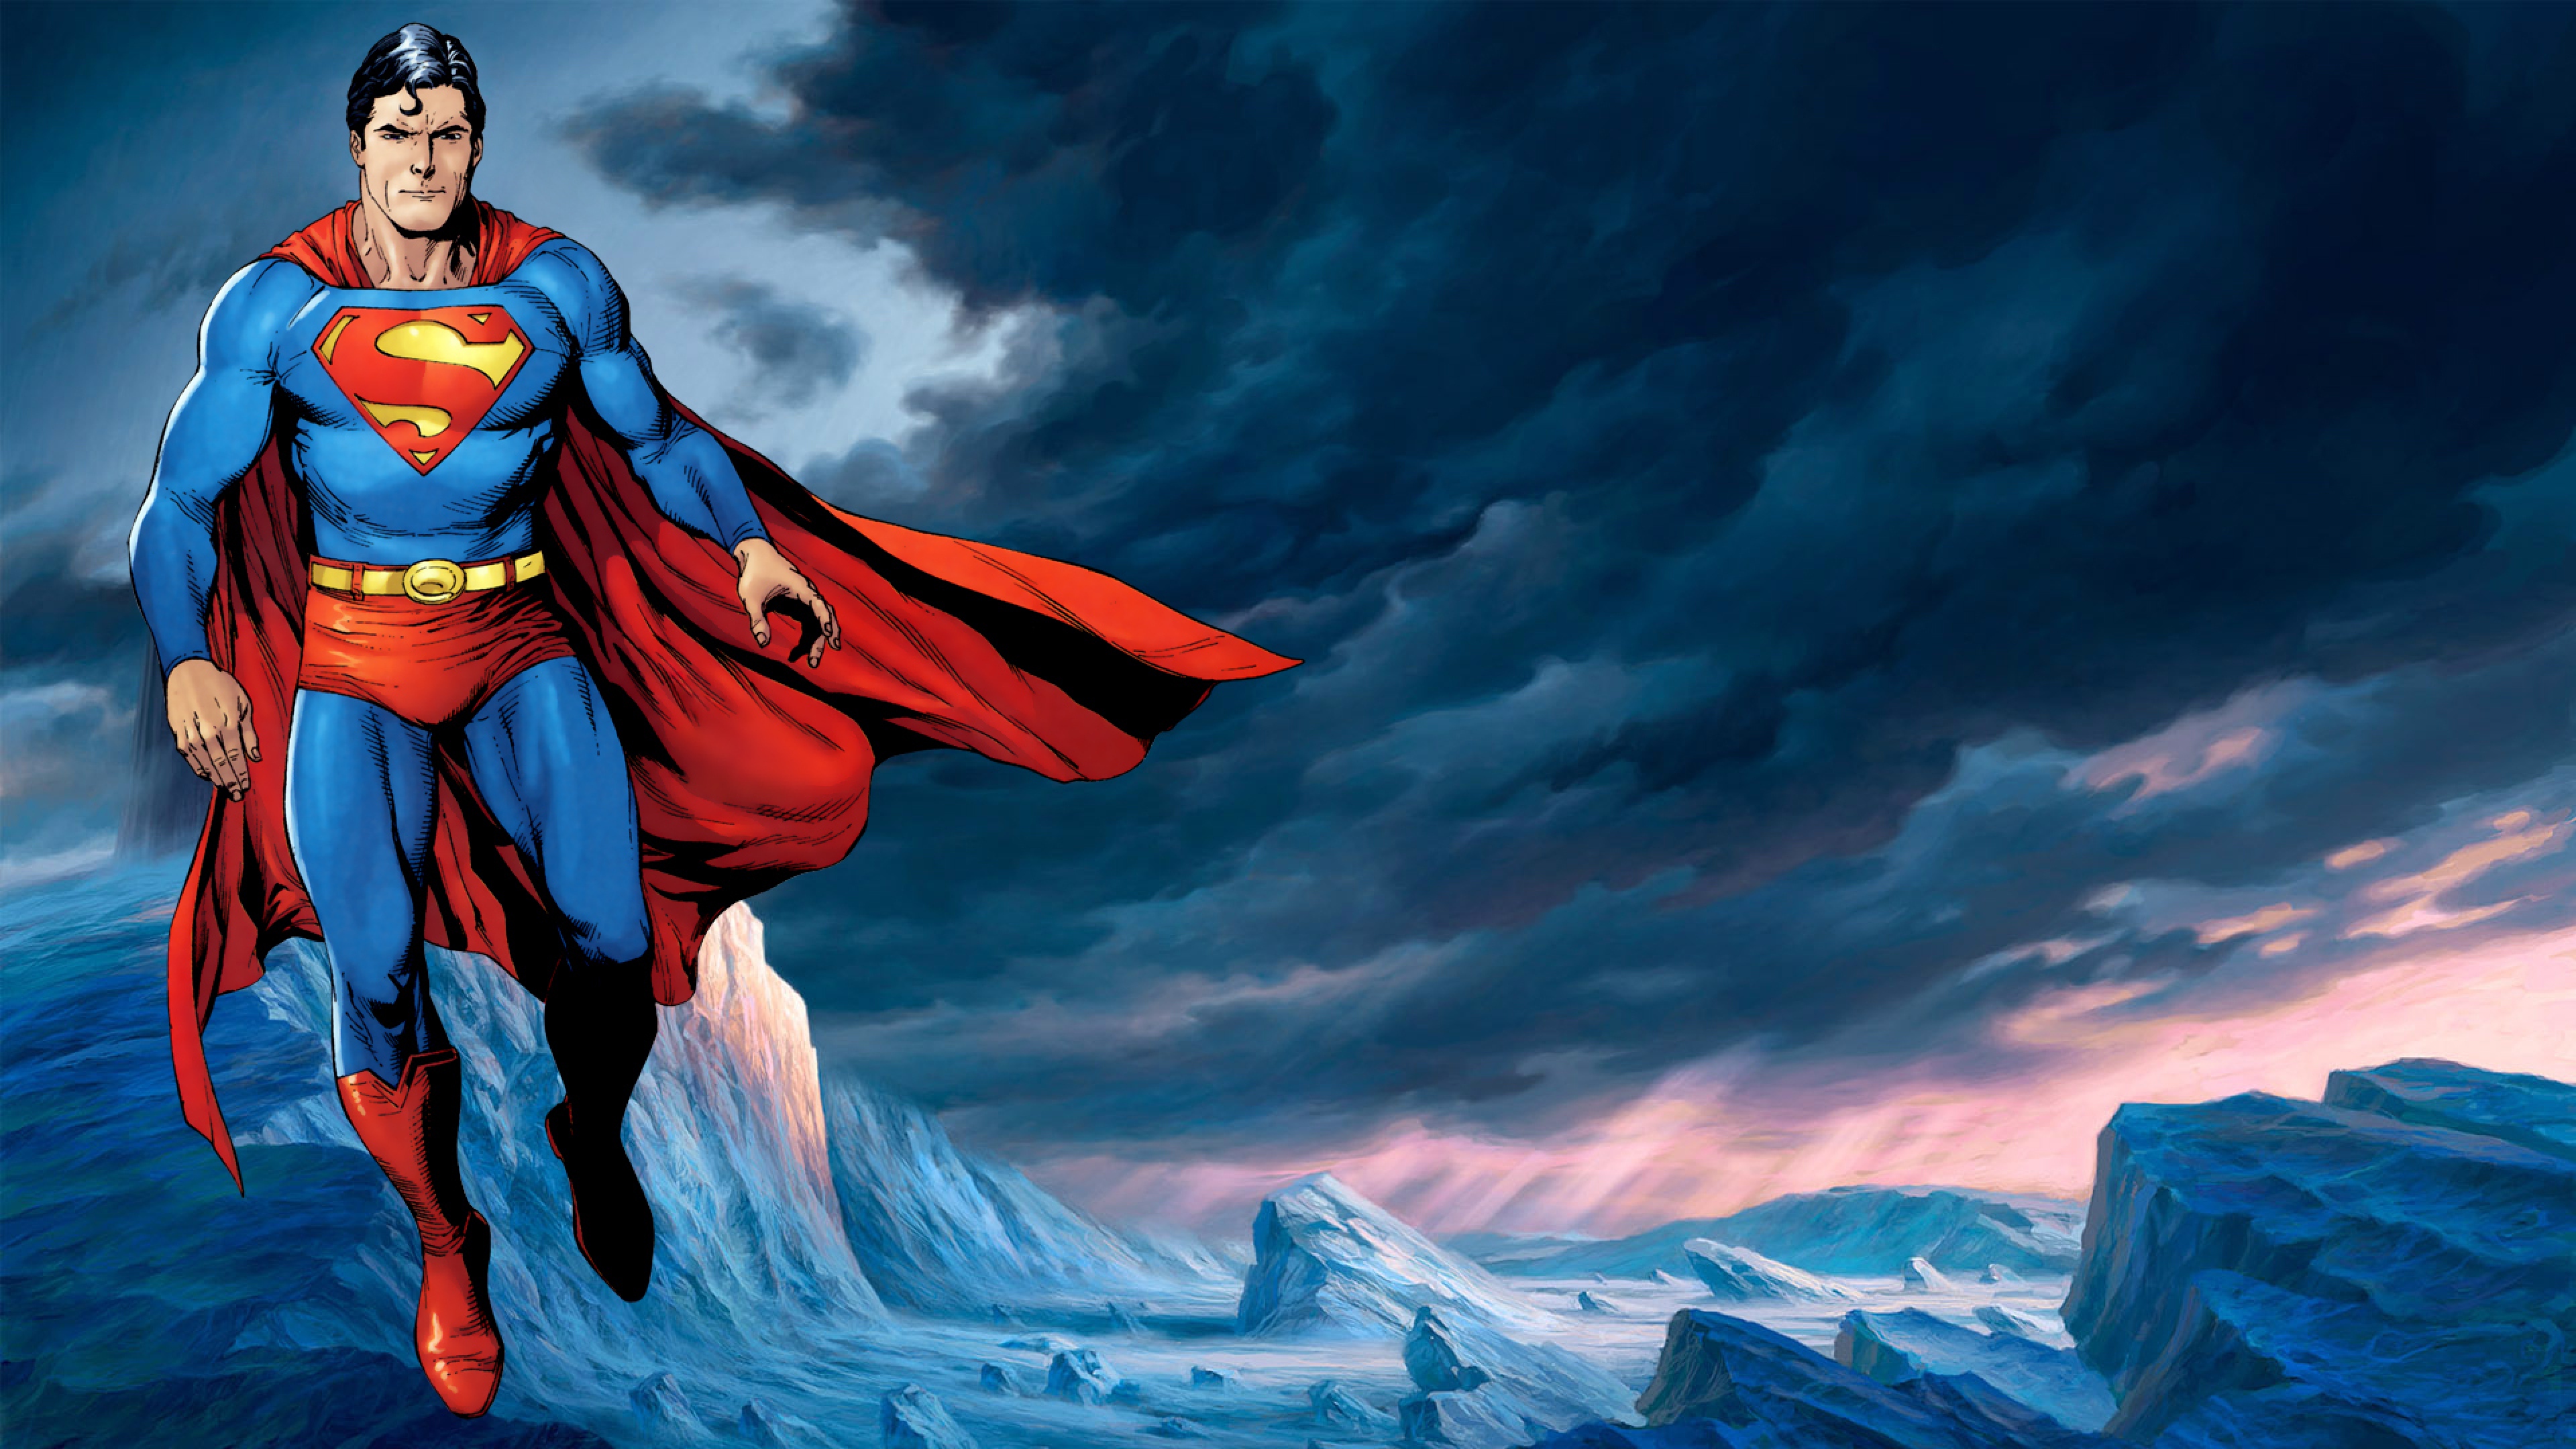 Tải Superman HD Wallpaper cho máy tính PC Windows phiên bản mới nhất -  com.SupermanHDWallpaper.AzkaStudio